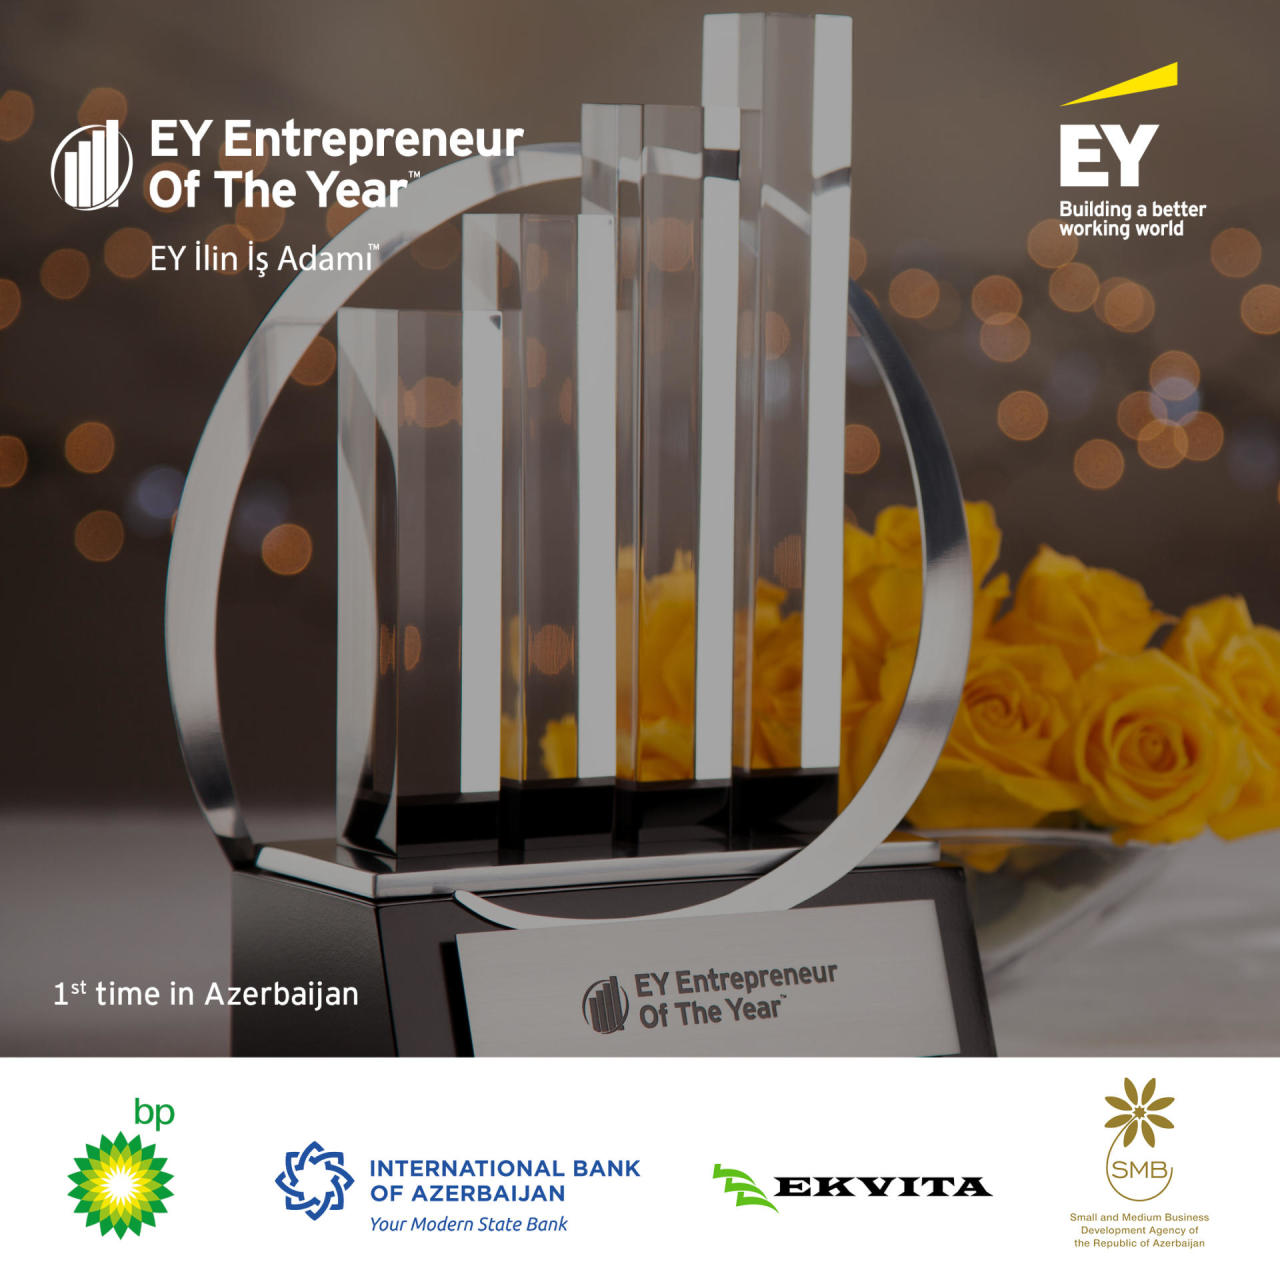 Тамам Баятлы: Конкурс “Предприниматель года”, проводимый компанией EY, - это хорошая возможность для наших местных компаний